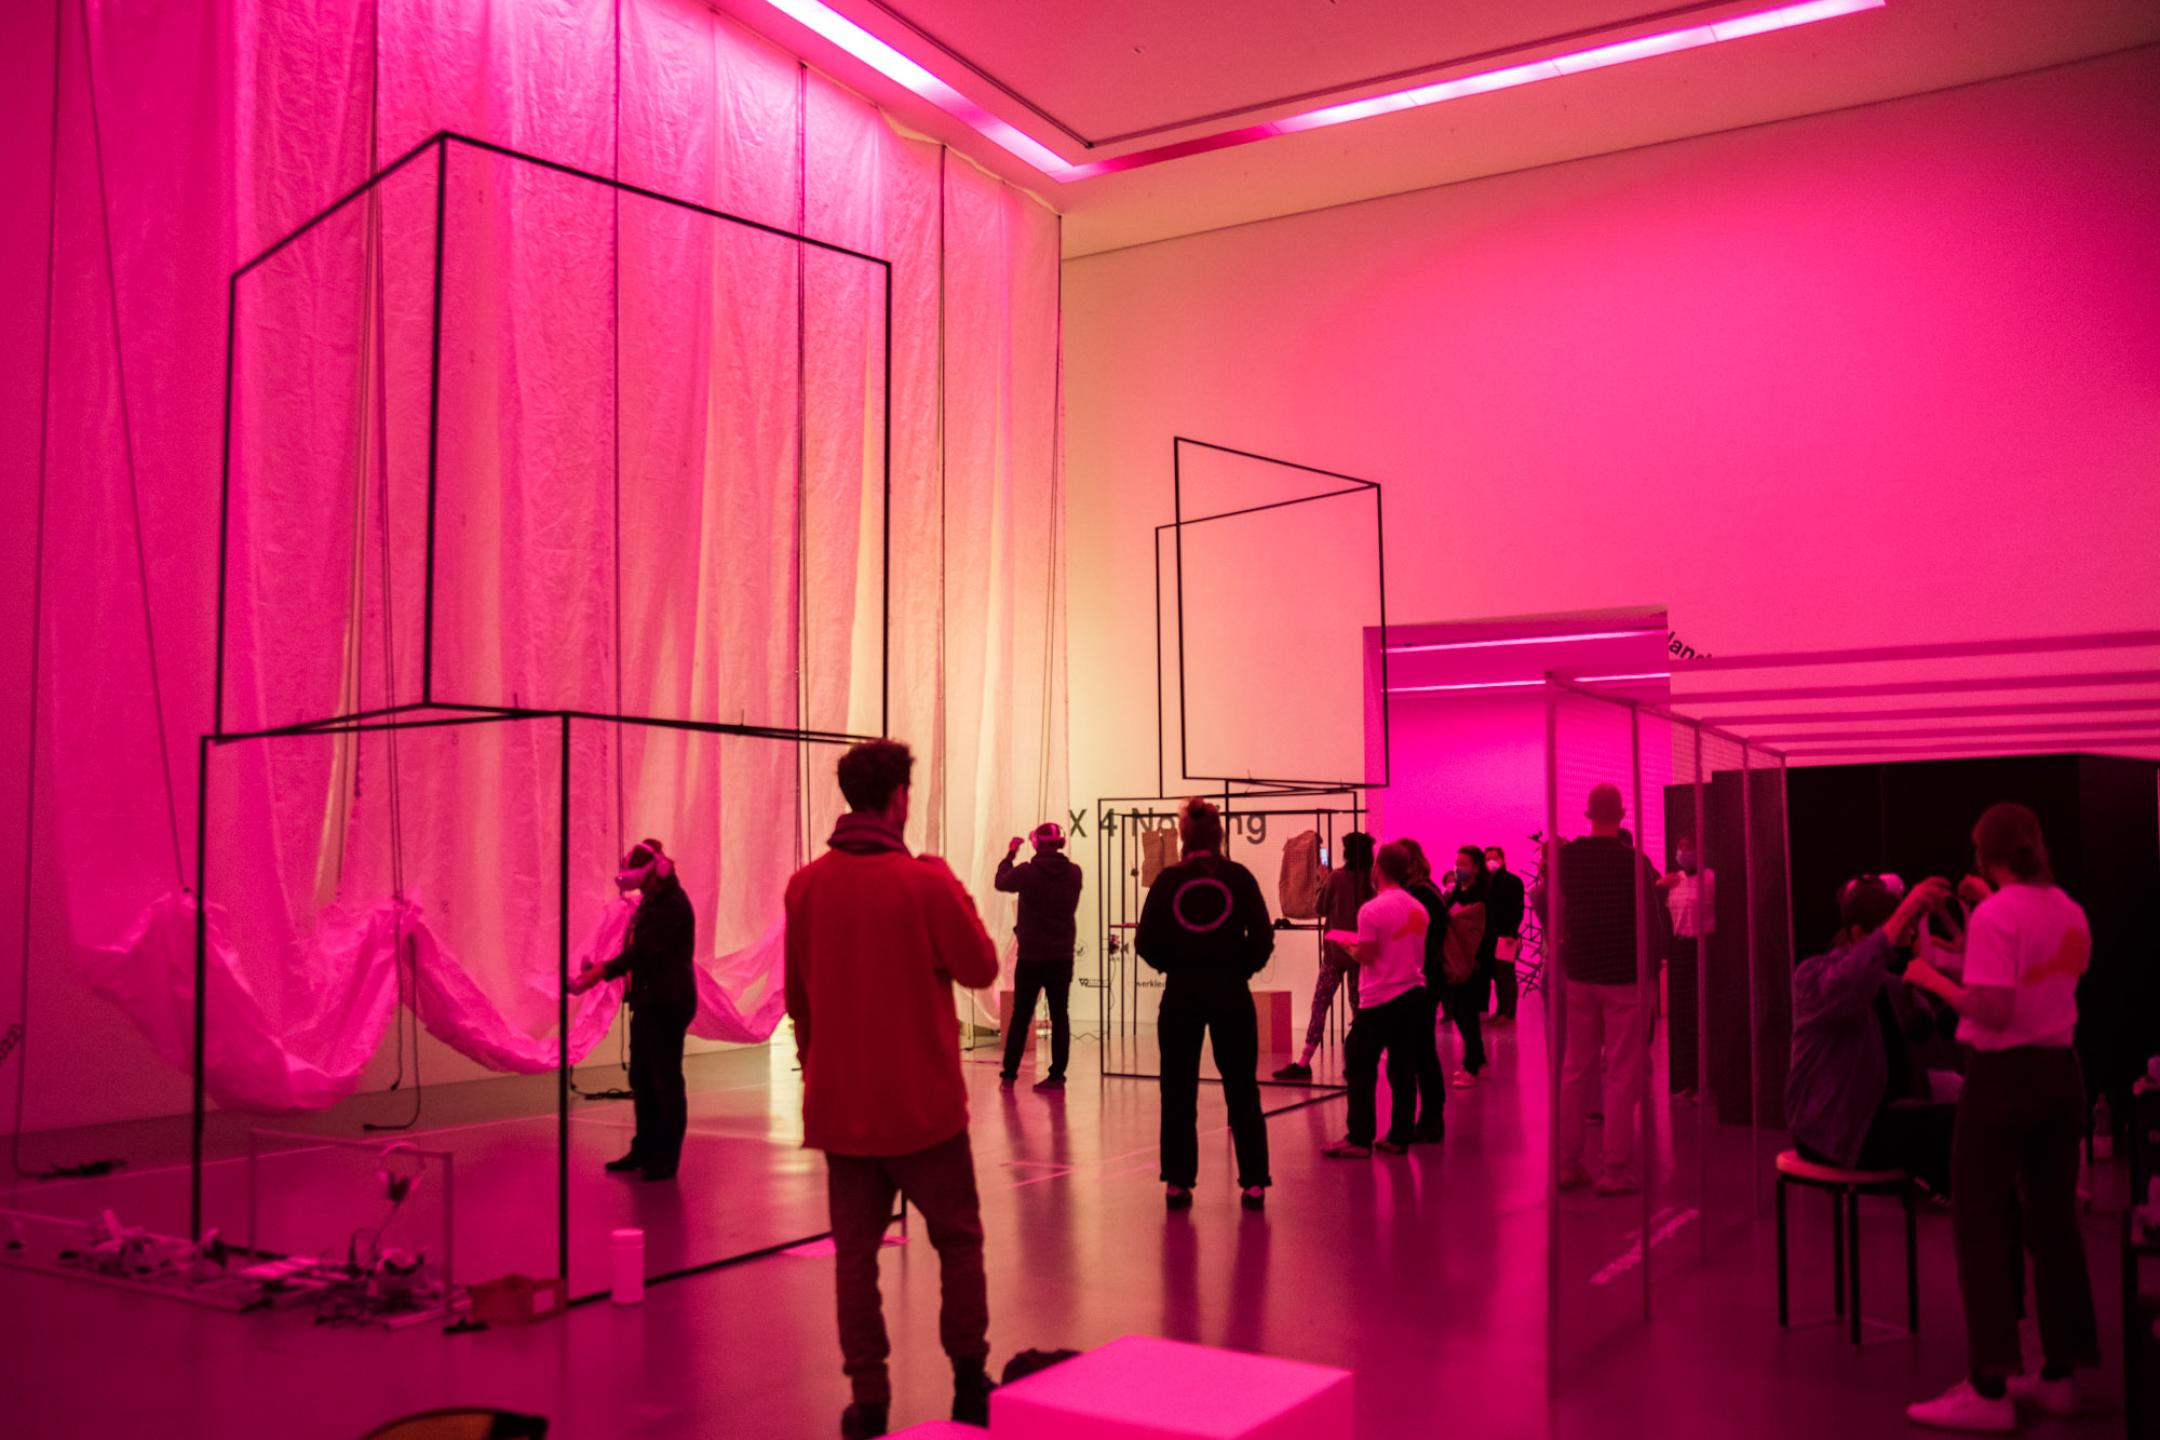 In einem Ausstellungsraum mit hohen Decken stehen und bewegen sich mehrere Menschen. Der Raum ist in pinkes Licht getaucht. Von der Decke hängt an einer Seite des Raums weiße, bauschige Stoffbahnen. Im Rahm stehen mehrere durchlässige Aufbauten aus Stahlgestängen.